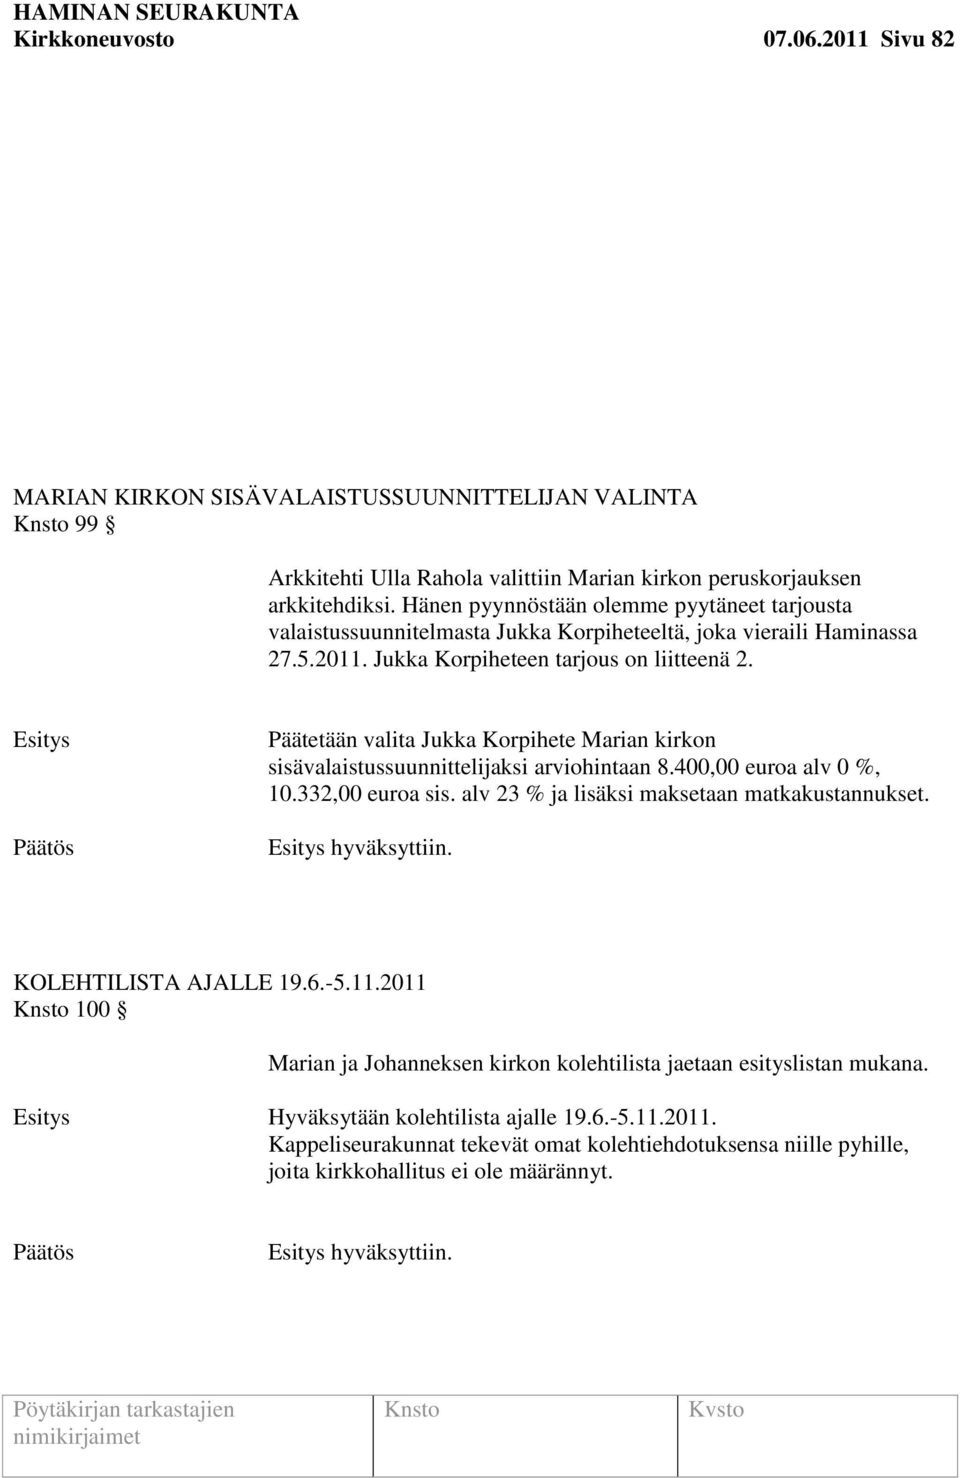 Päätetään valita Jukka Korpihete Marian kirkon sisävalaistussuunnittelijaksi arviohintaan 8.400,00 euroa alv 0 %, 10.332,00 euroa sis. alv 23 % ja lisäksi maksetaan matkakustannukset. hyväksyttiin.